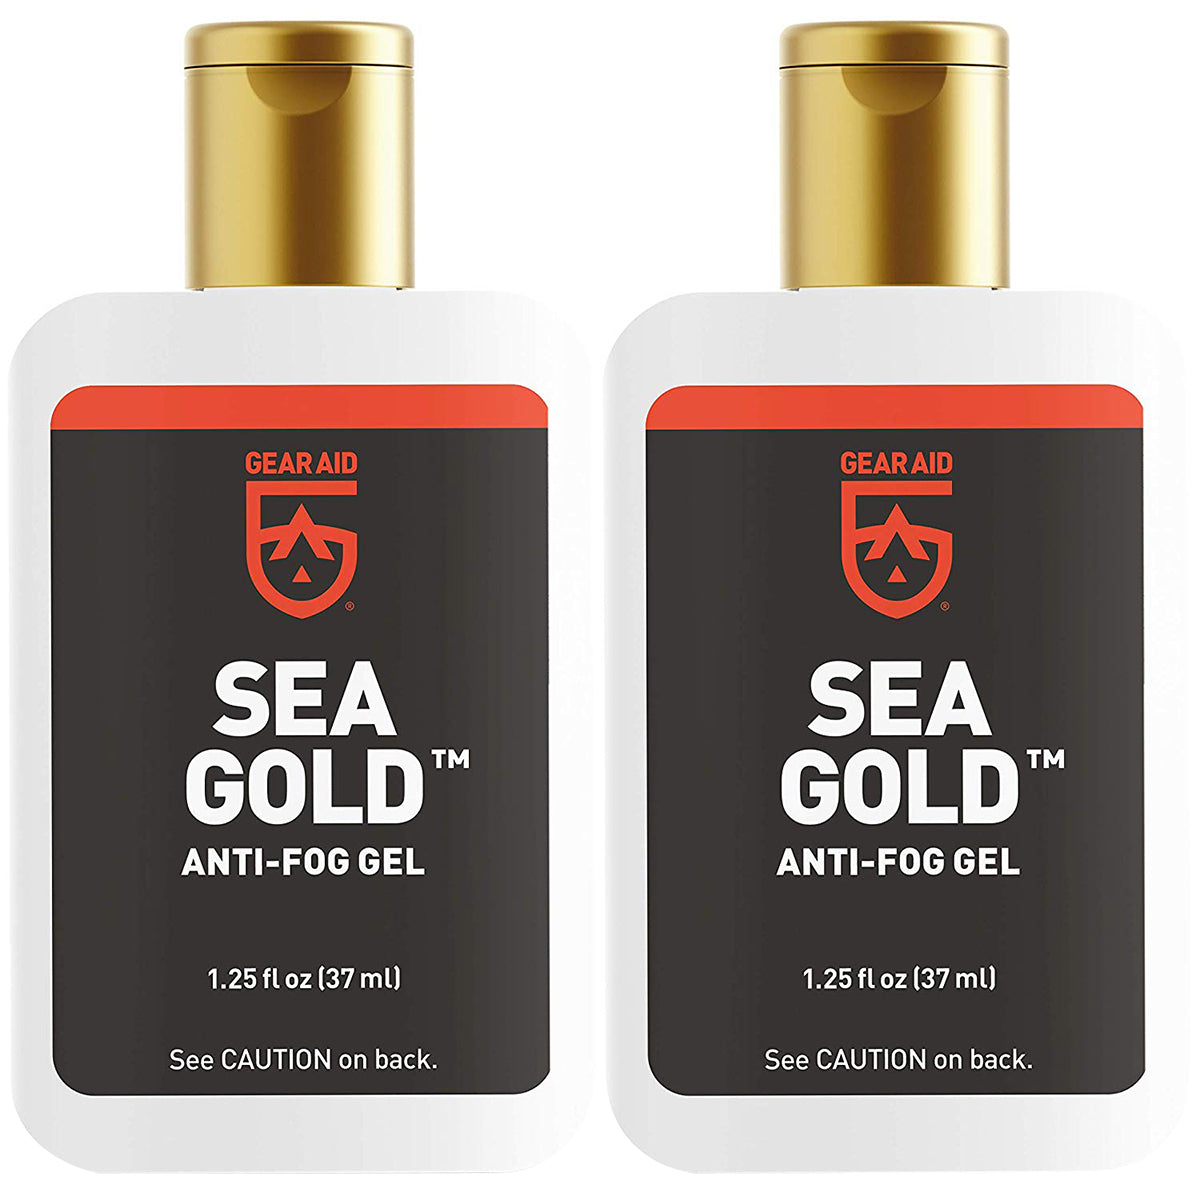 Gear Aid Sea Gold 1.25 oz. Water Sports Anti-Fog Gel - 2-Pack Gear Aid